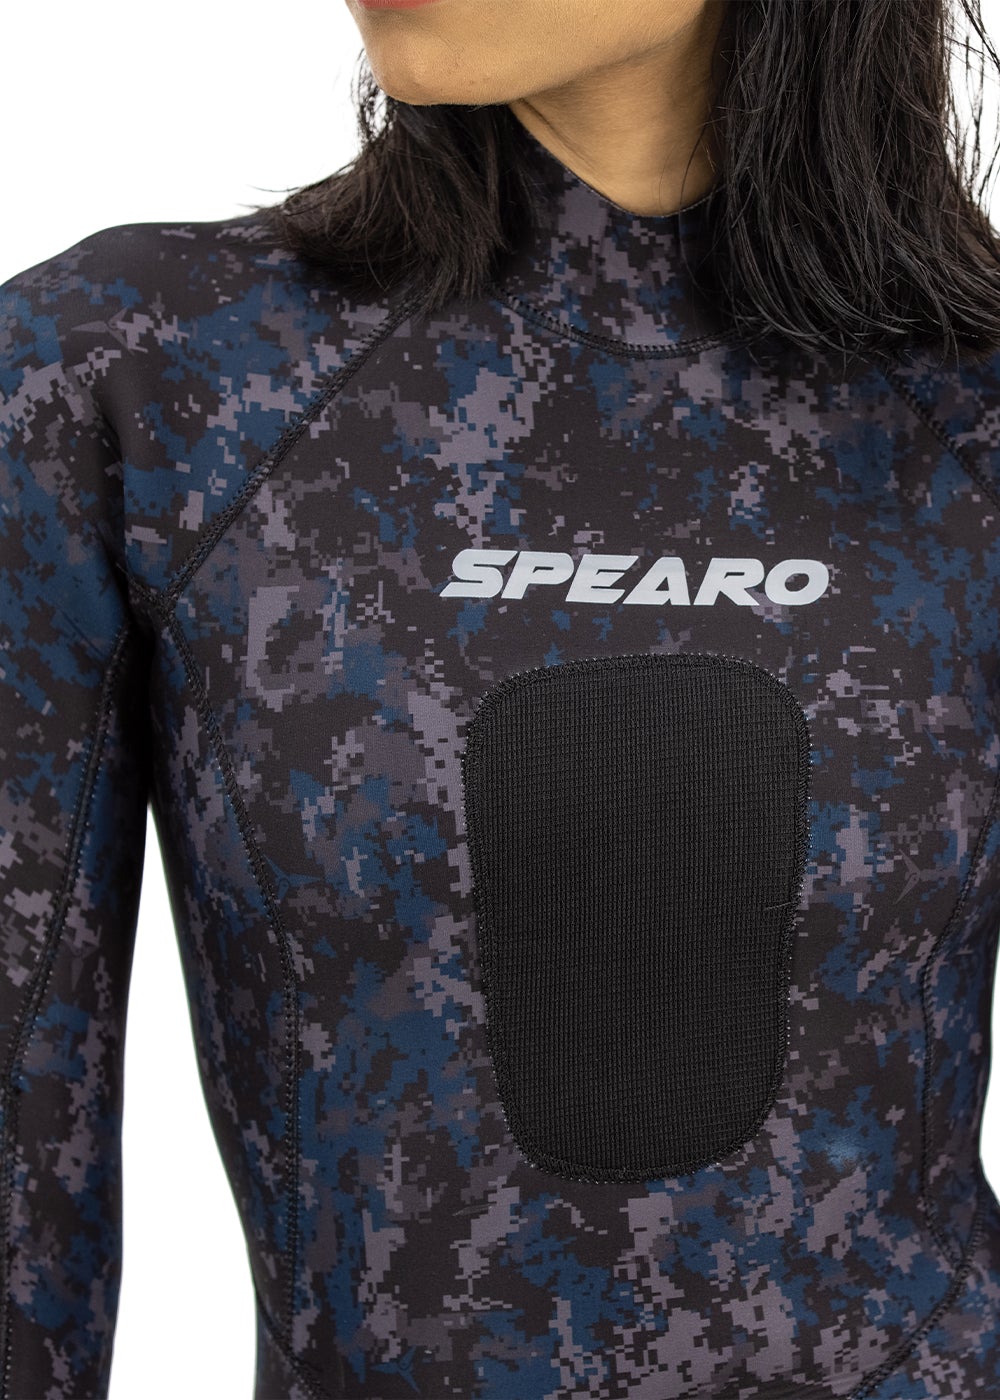 Spearo 7 Seas Womens 3.5mm Spearfishing Steamer Wetsuit